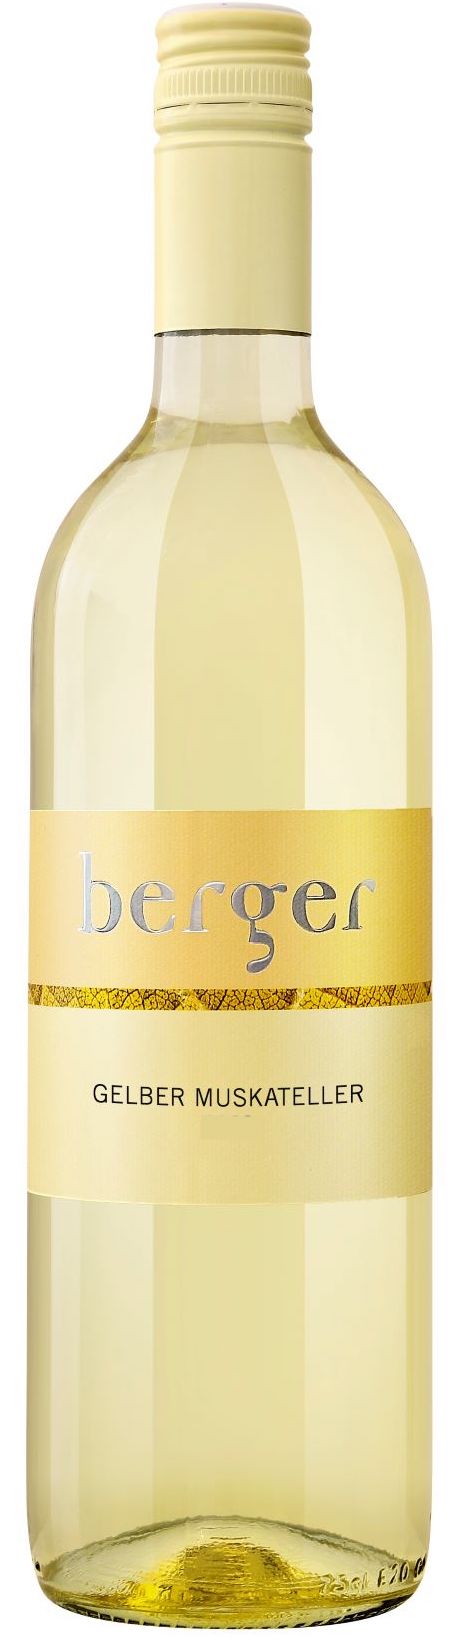 Weingut Berger Gelber Muskateller 2019 750ml